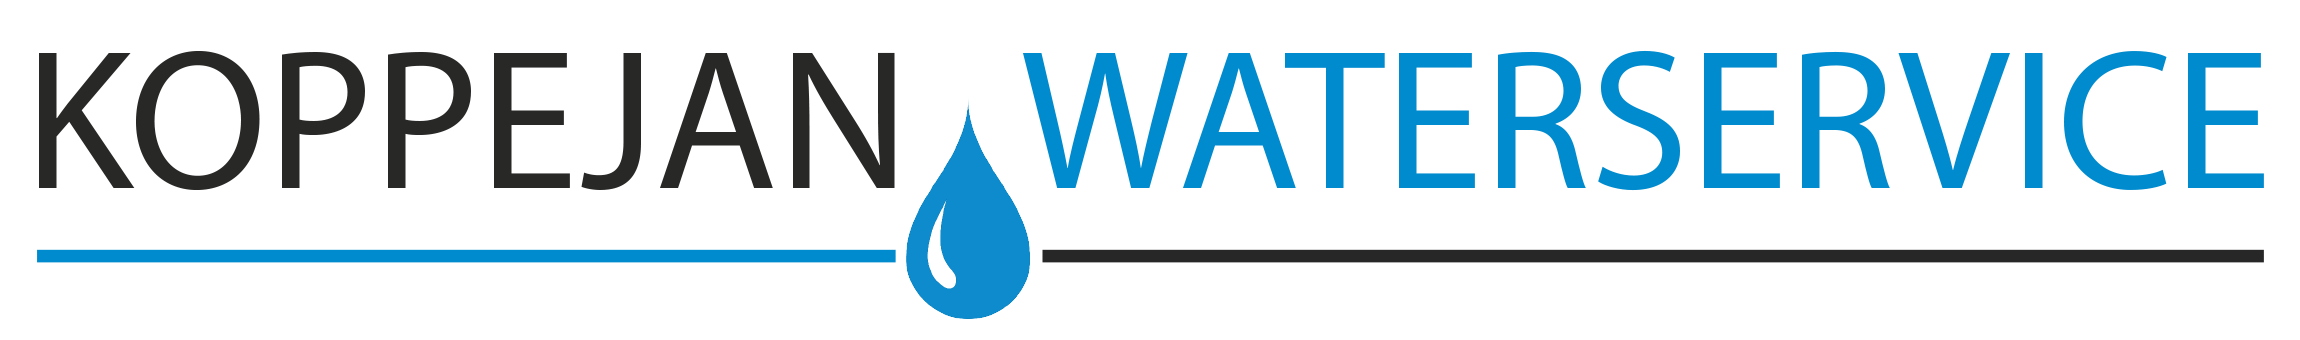 Waterverzachter zout | Koppejan Waterservice